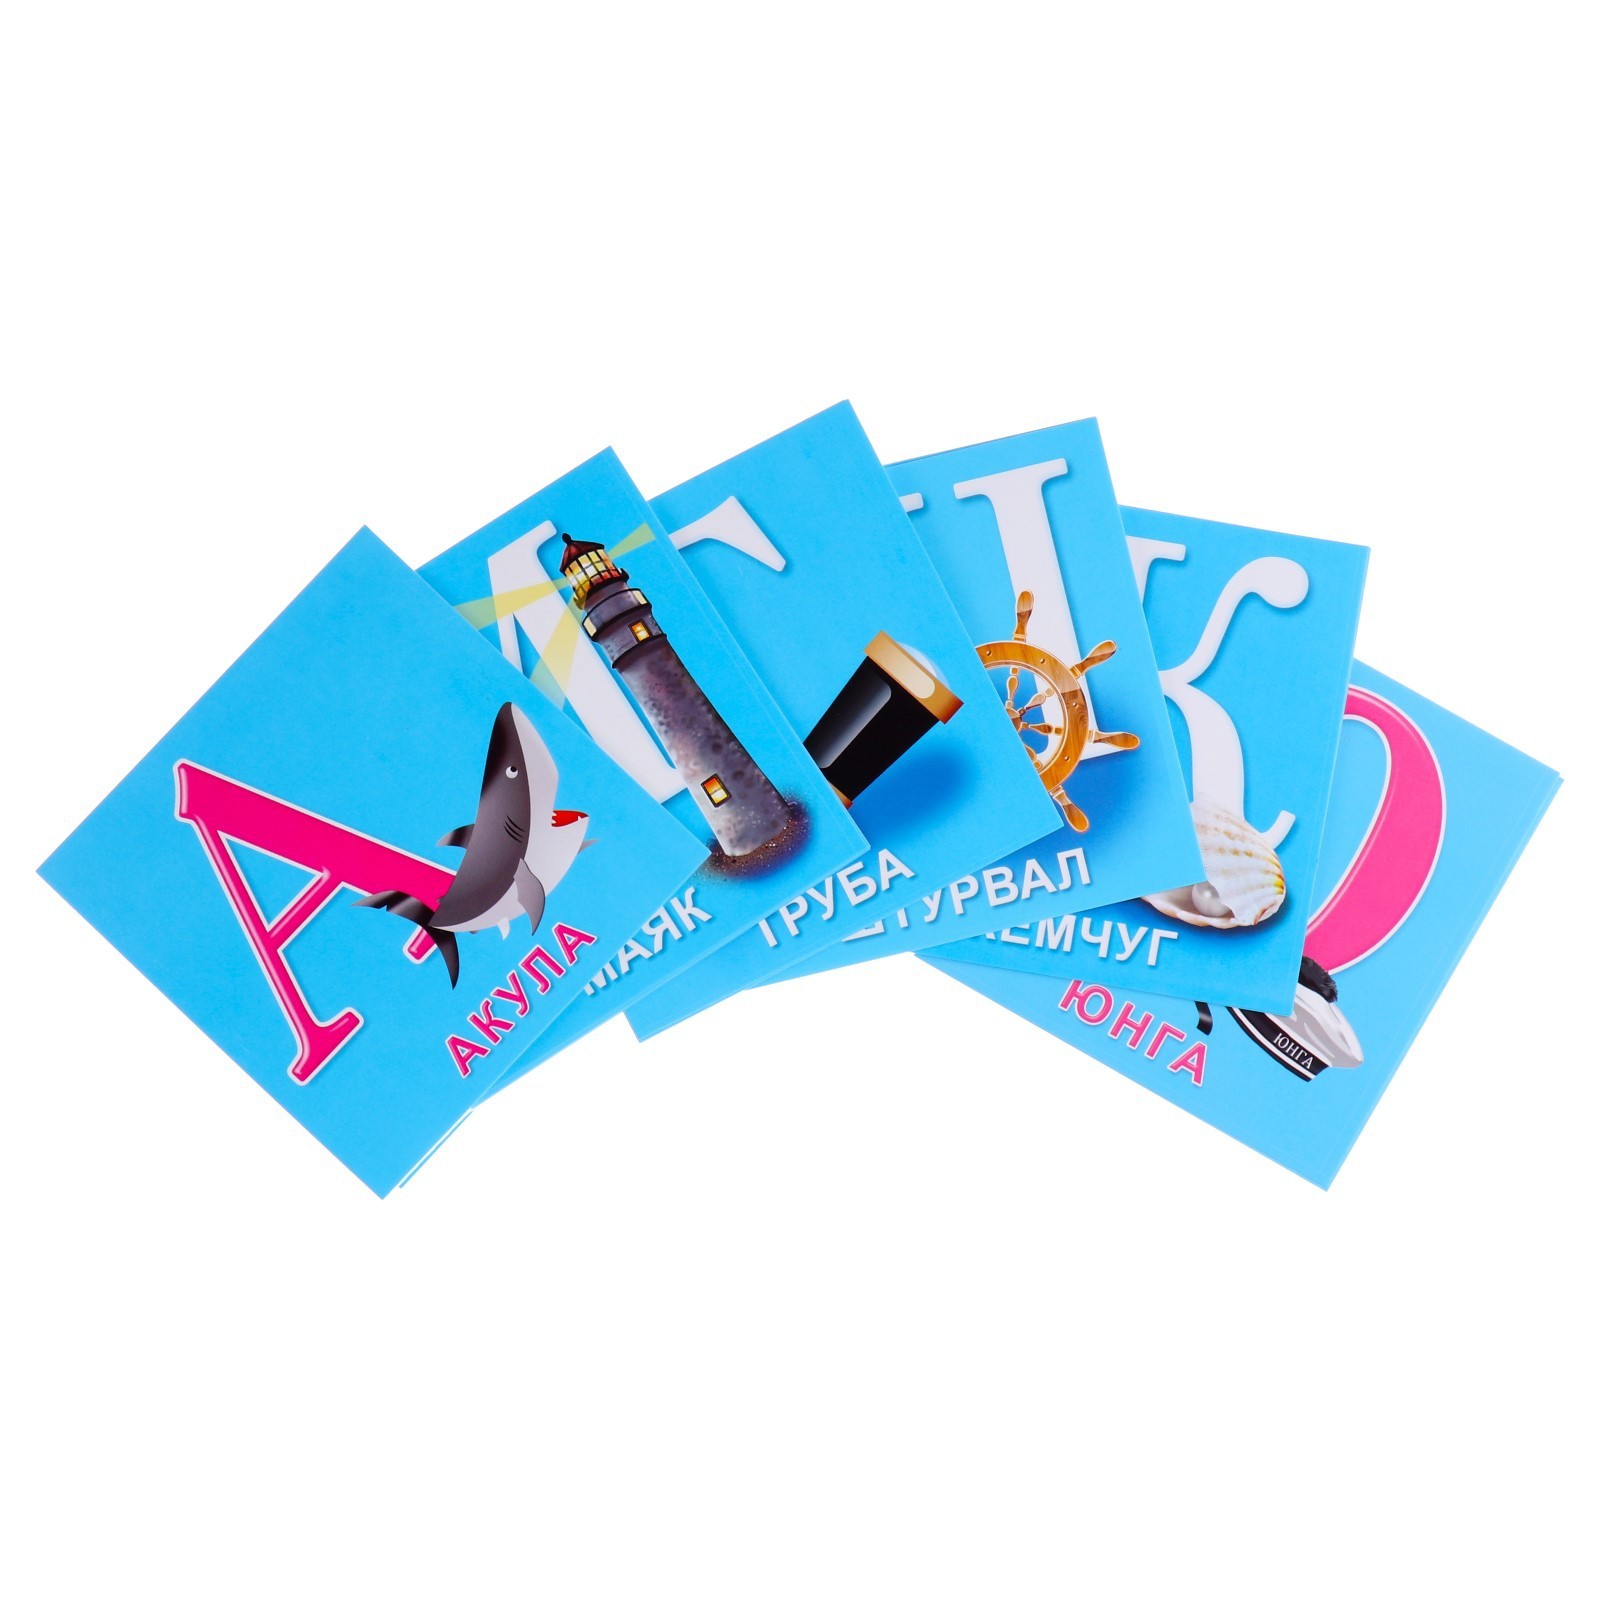 Набор обучающих карточек Гранд Дизайн, Азбука, 9949455, голубой цвет, 33 карточки автомобильная азбука карточки